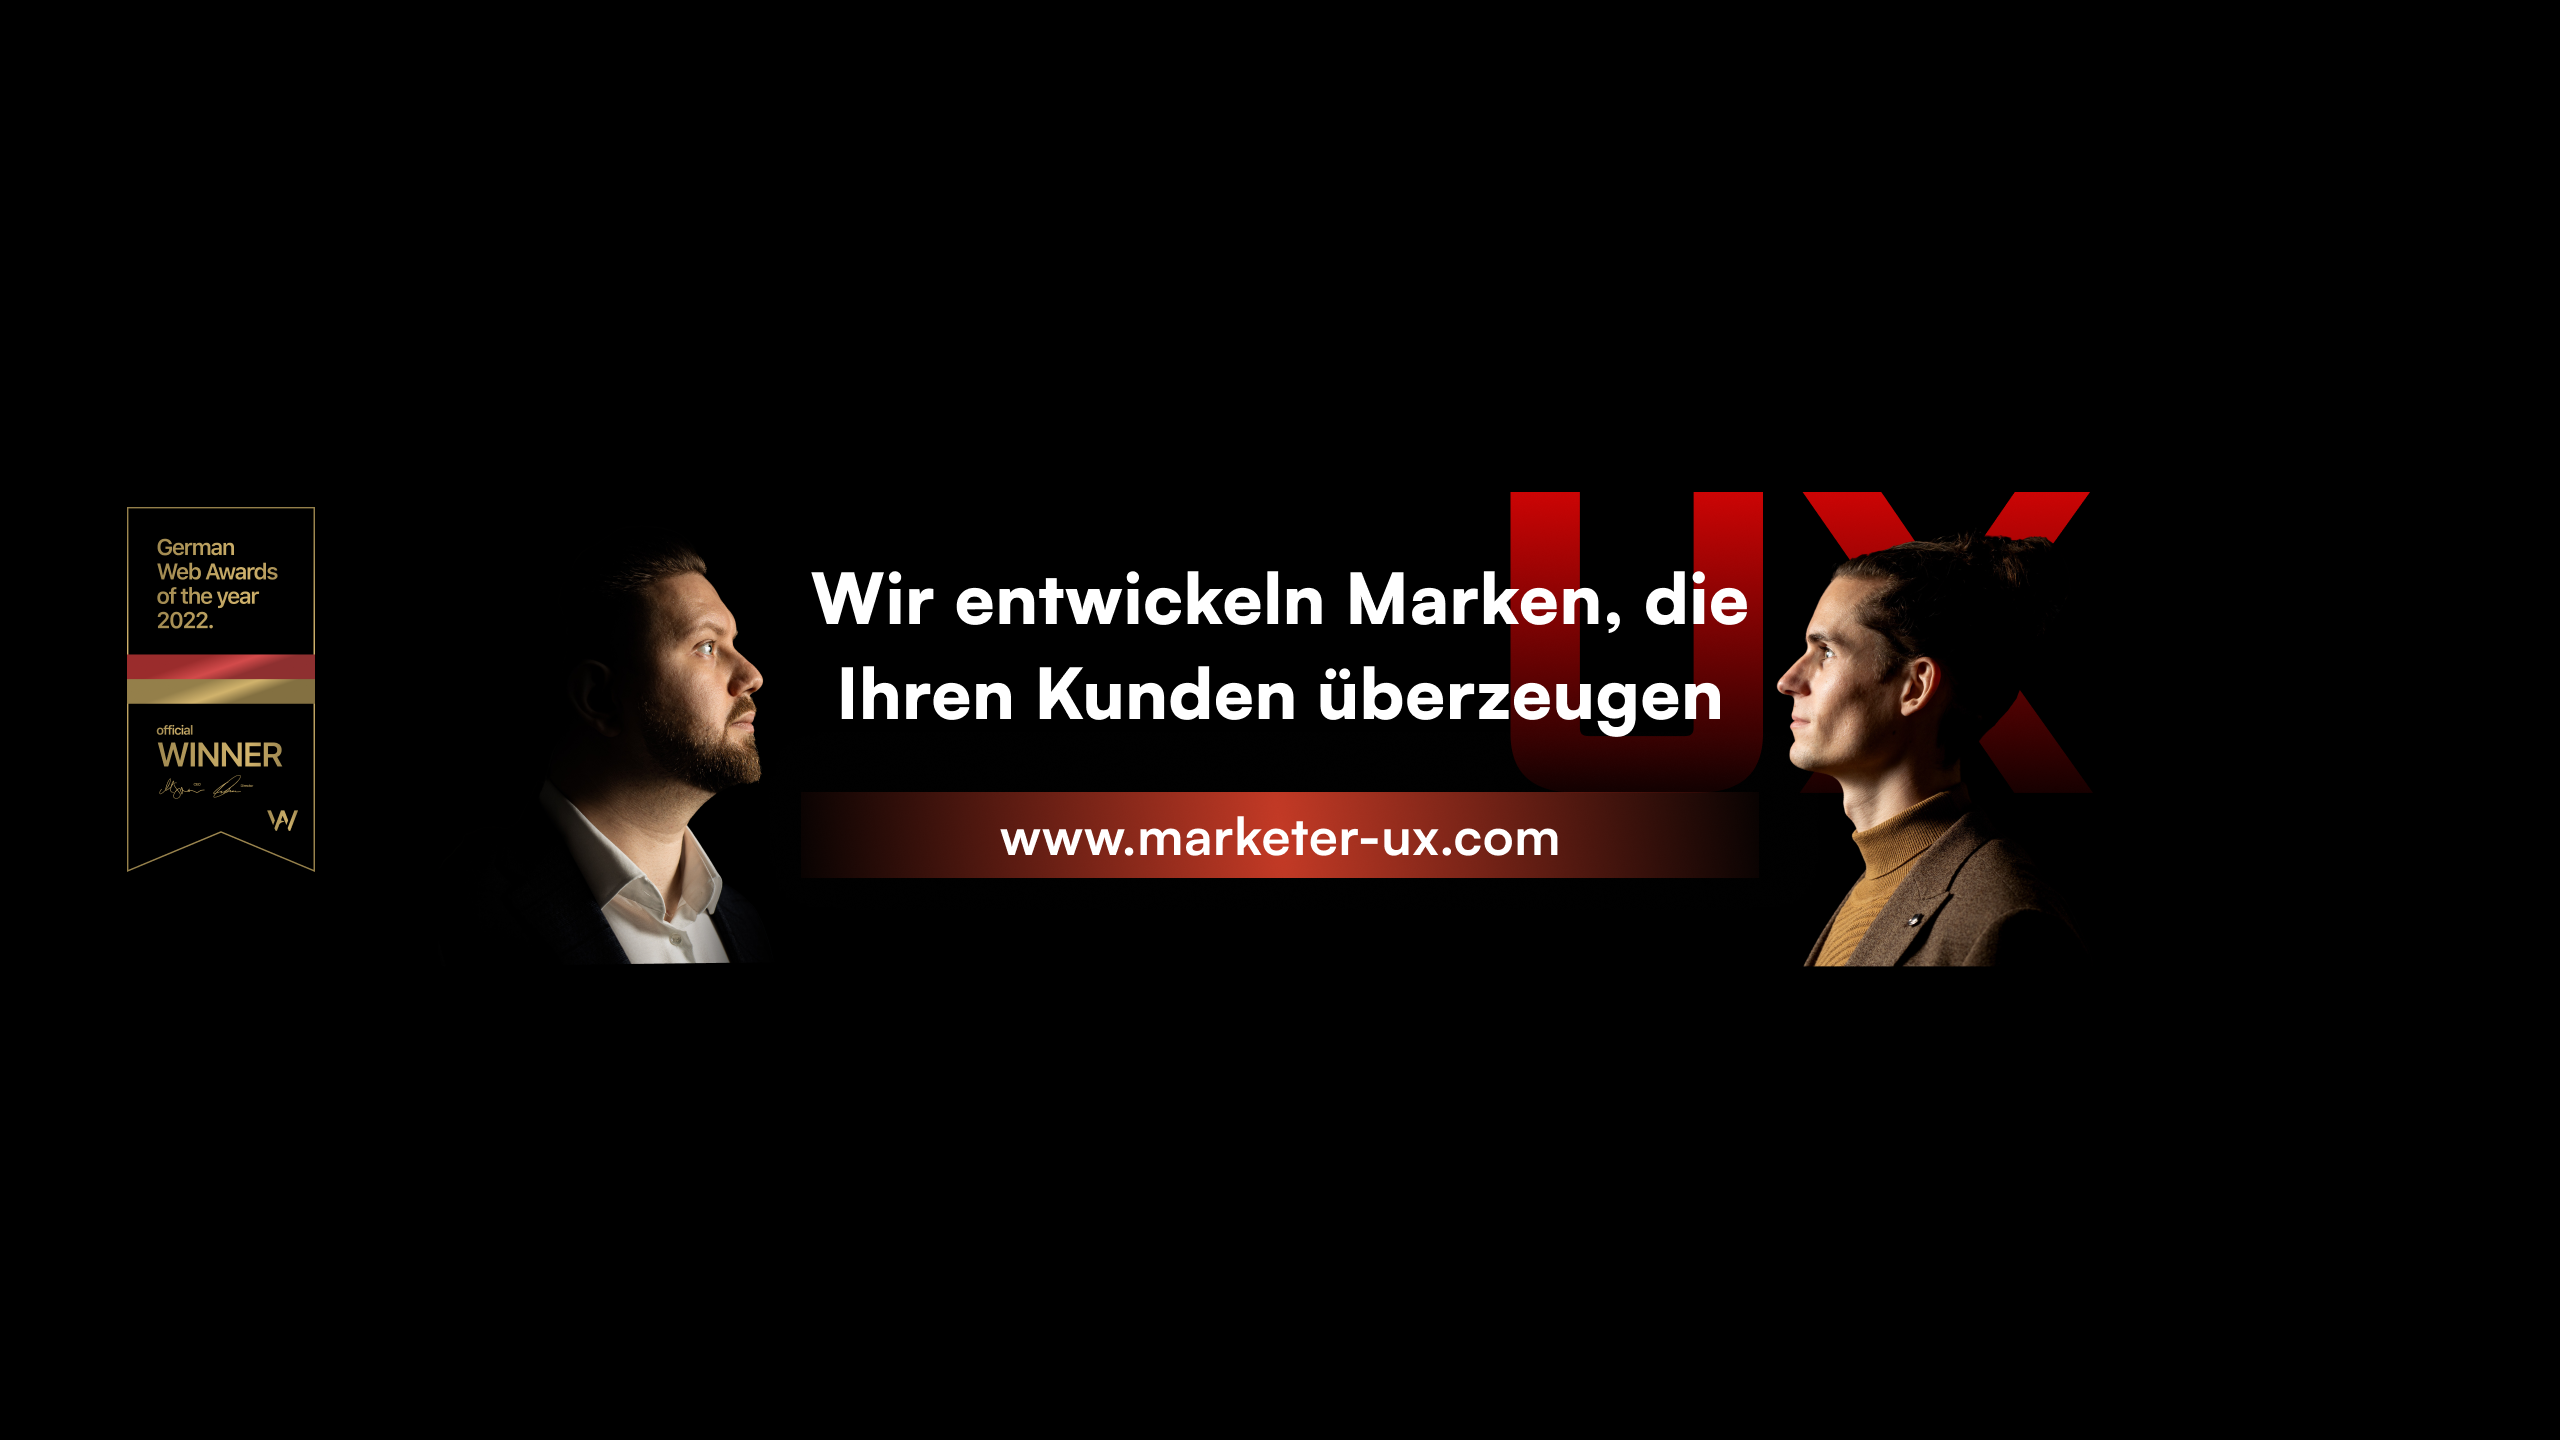 marketer UX / agency von Düsseldorf / Background